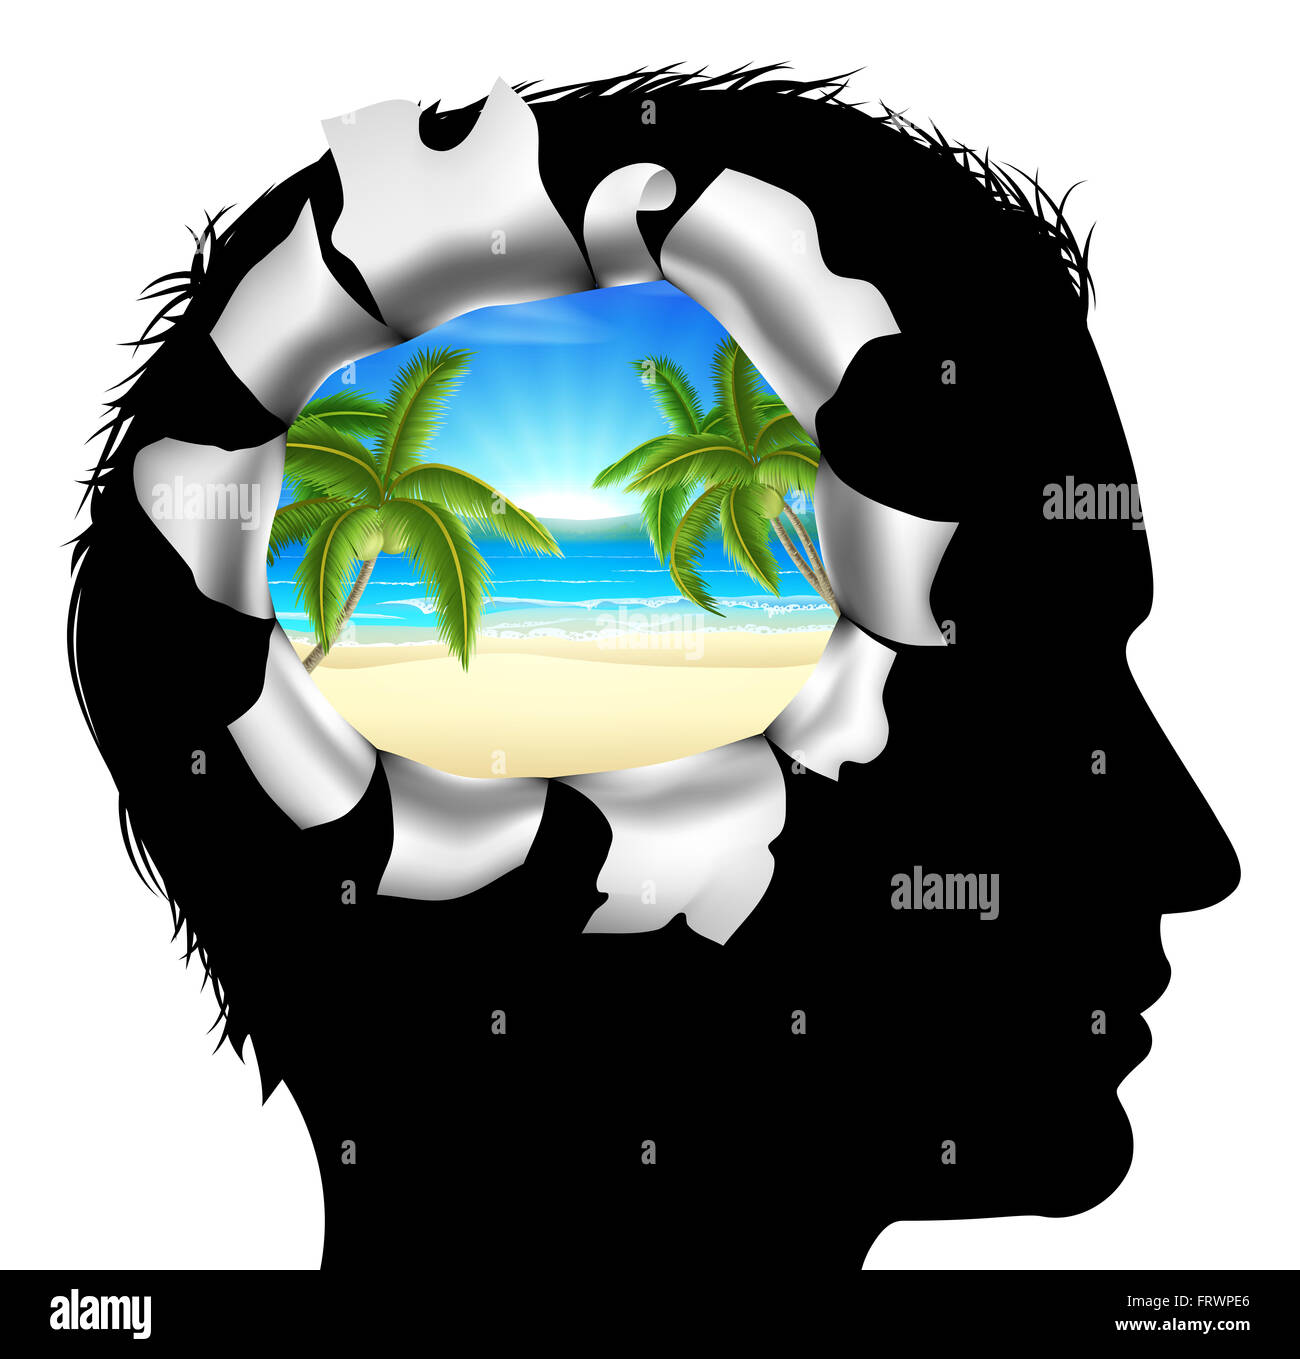 Una testa di uomo in silhouette con una spiaggia tropicale scena di vacanza. Concetto di pensare o sognare di una spiaggia tropicale vacanza Foto Stock